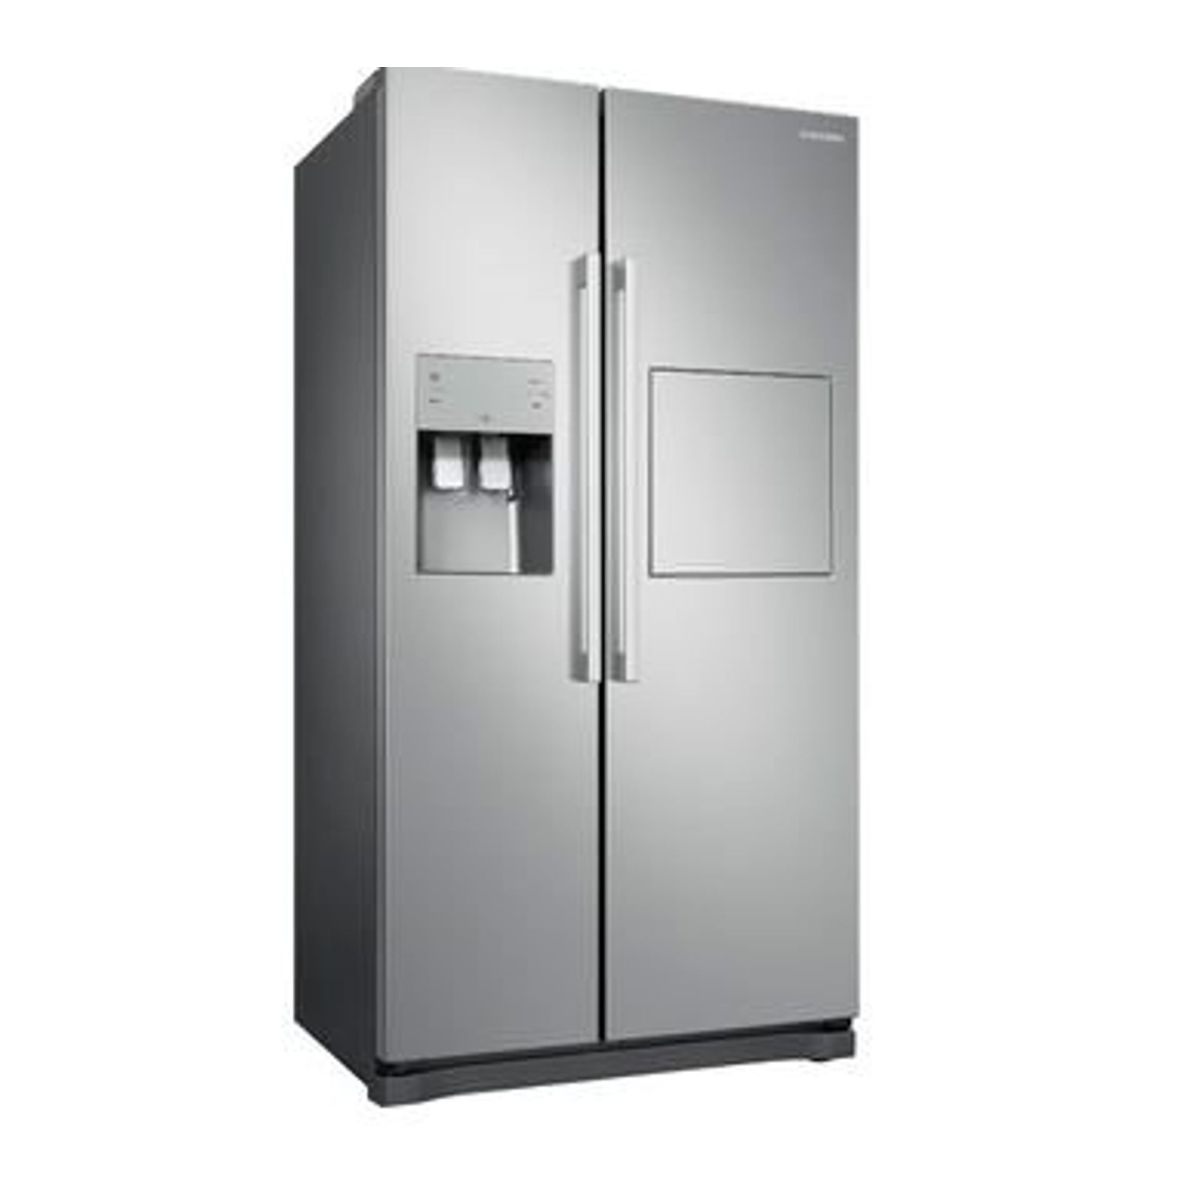 Réfrigérateur Américain Samsung RS68A8520S9 - Réfrigérateur